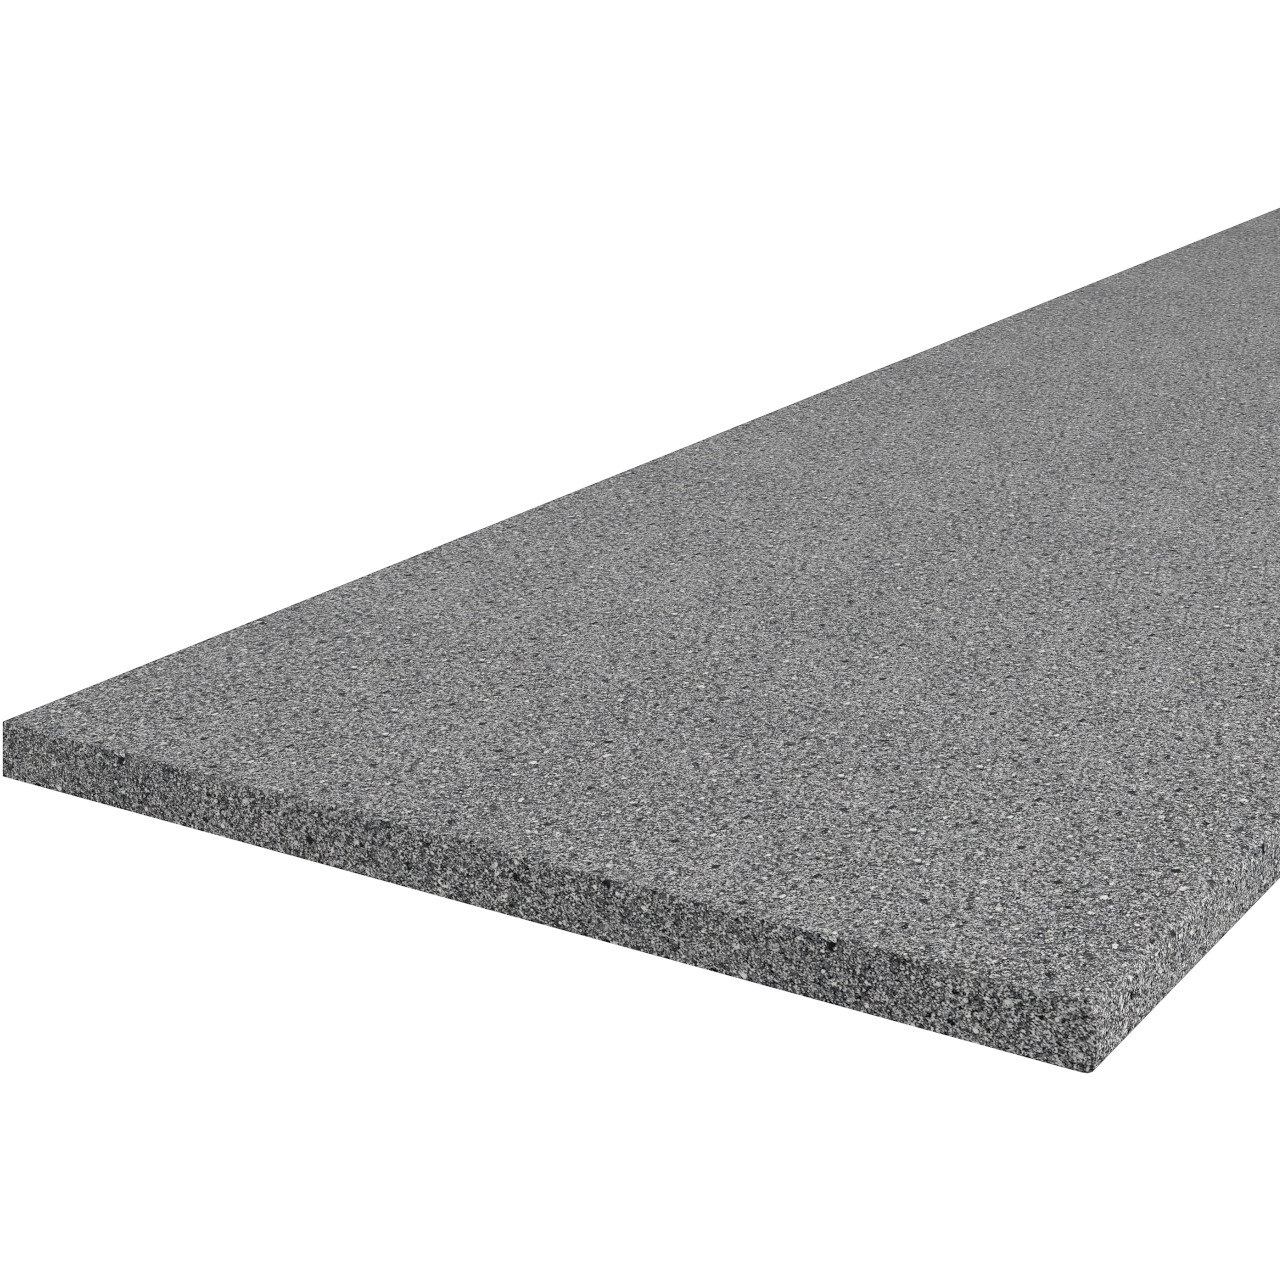 Kitchen worktop 28mm granite